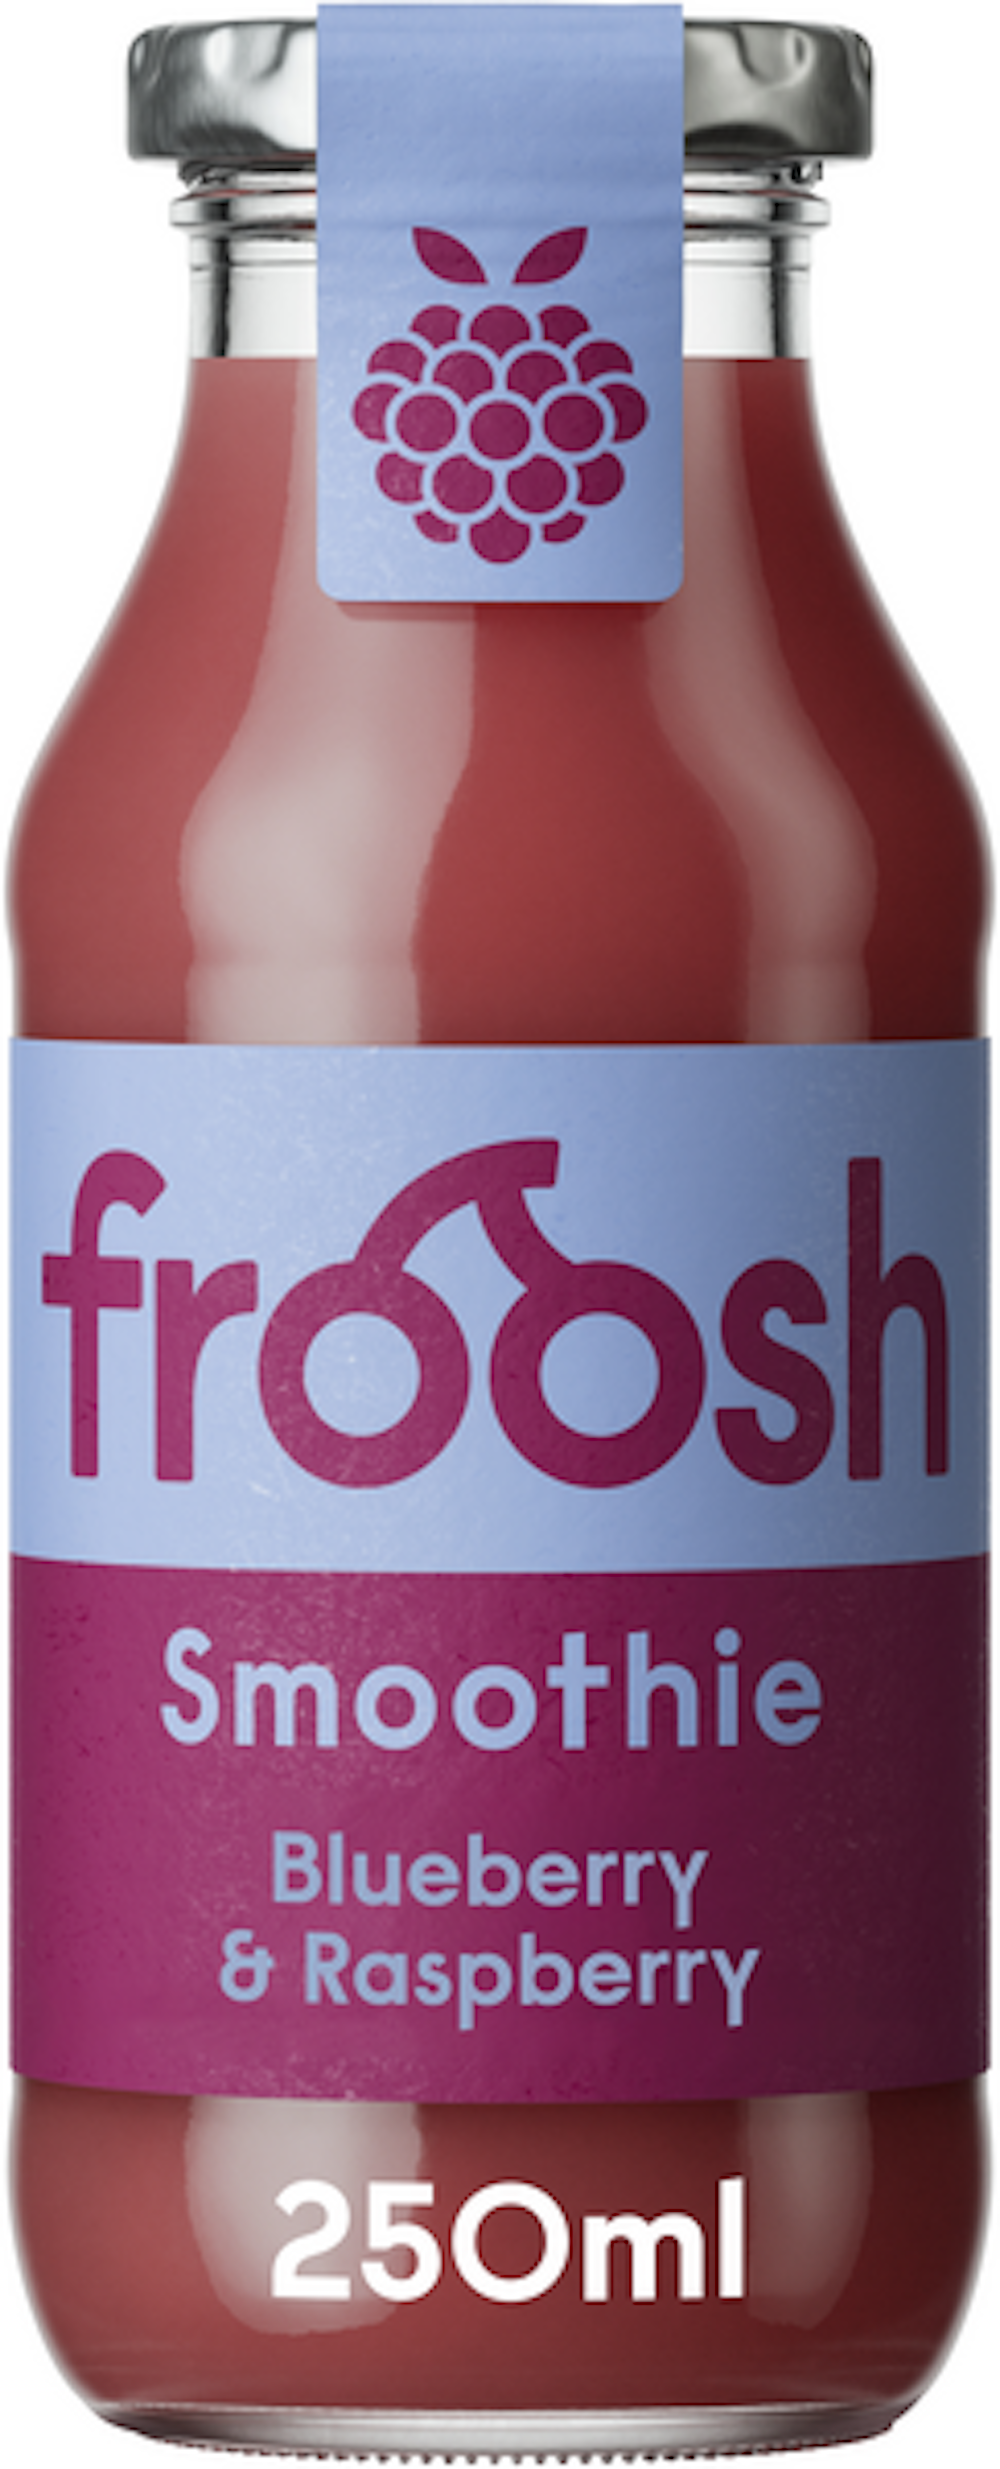 Froosh smoothie 250ml mustikka-vadelma — HoReCa-tukku Kespro